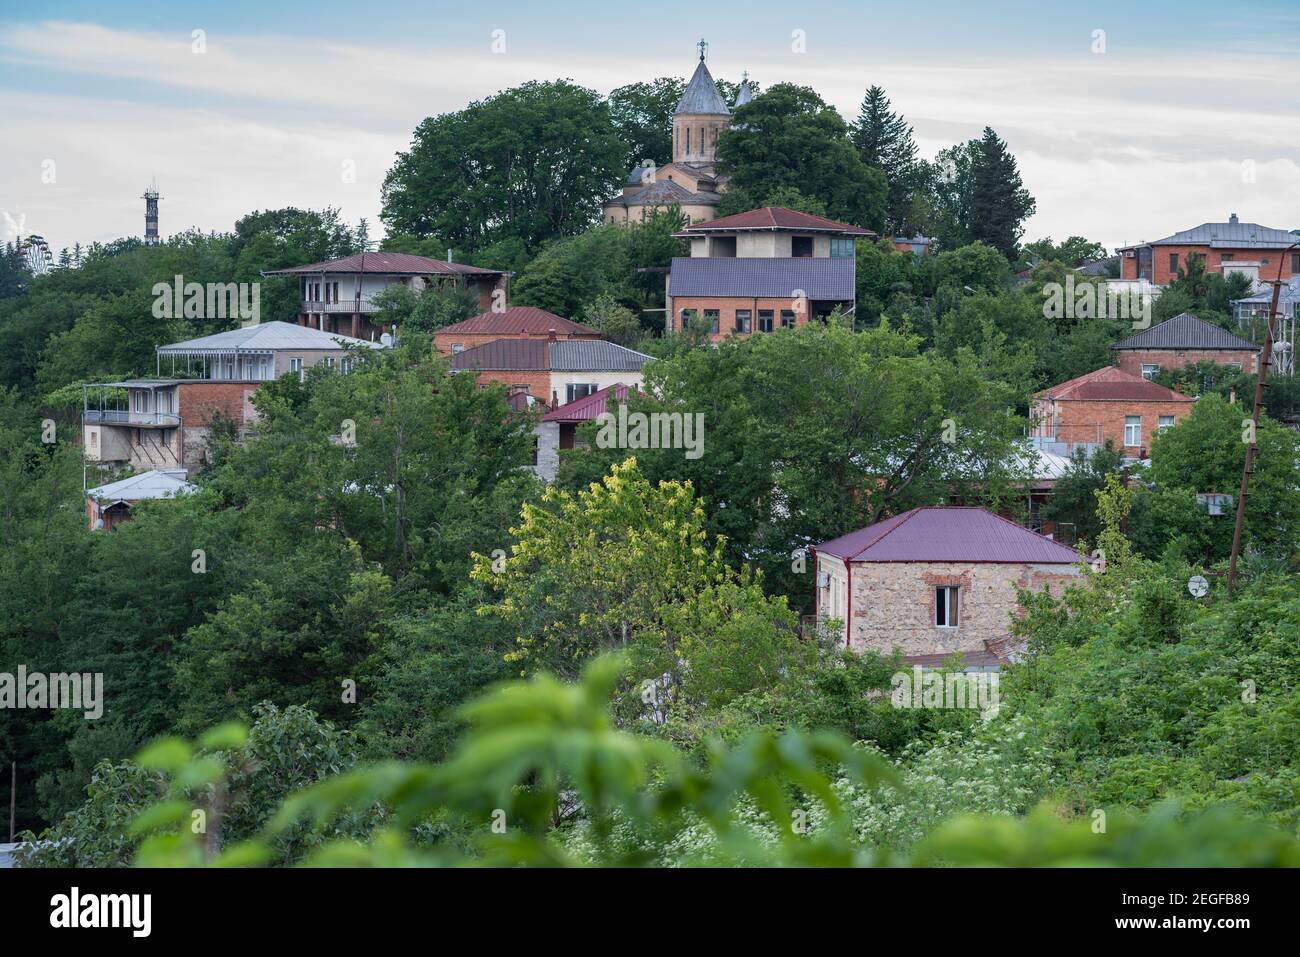 Case residenziali private e Chiesa di San Giorgio (in Via Kazbegi) su una collina coperta di giardini nella città di Kutaisi, Georgia. Foto Stock